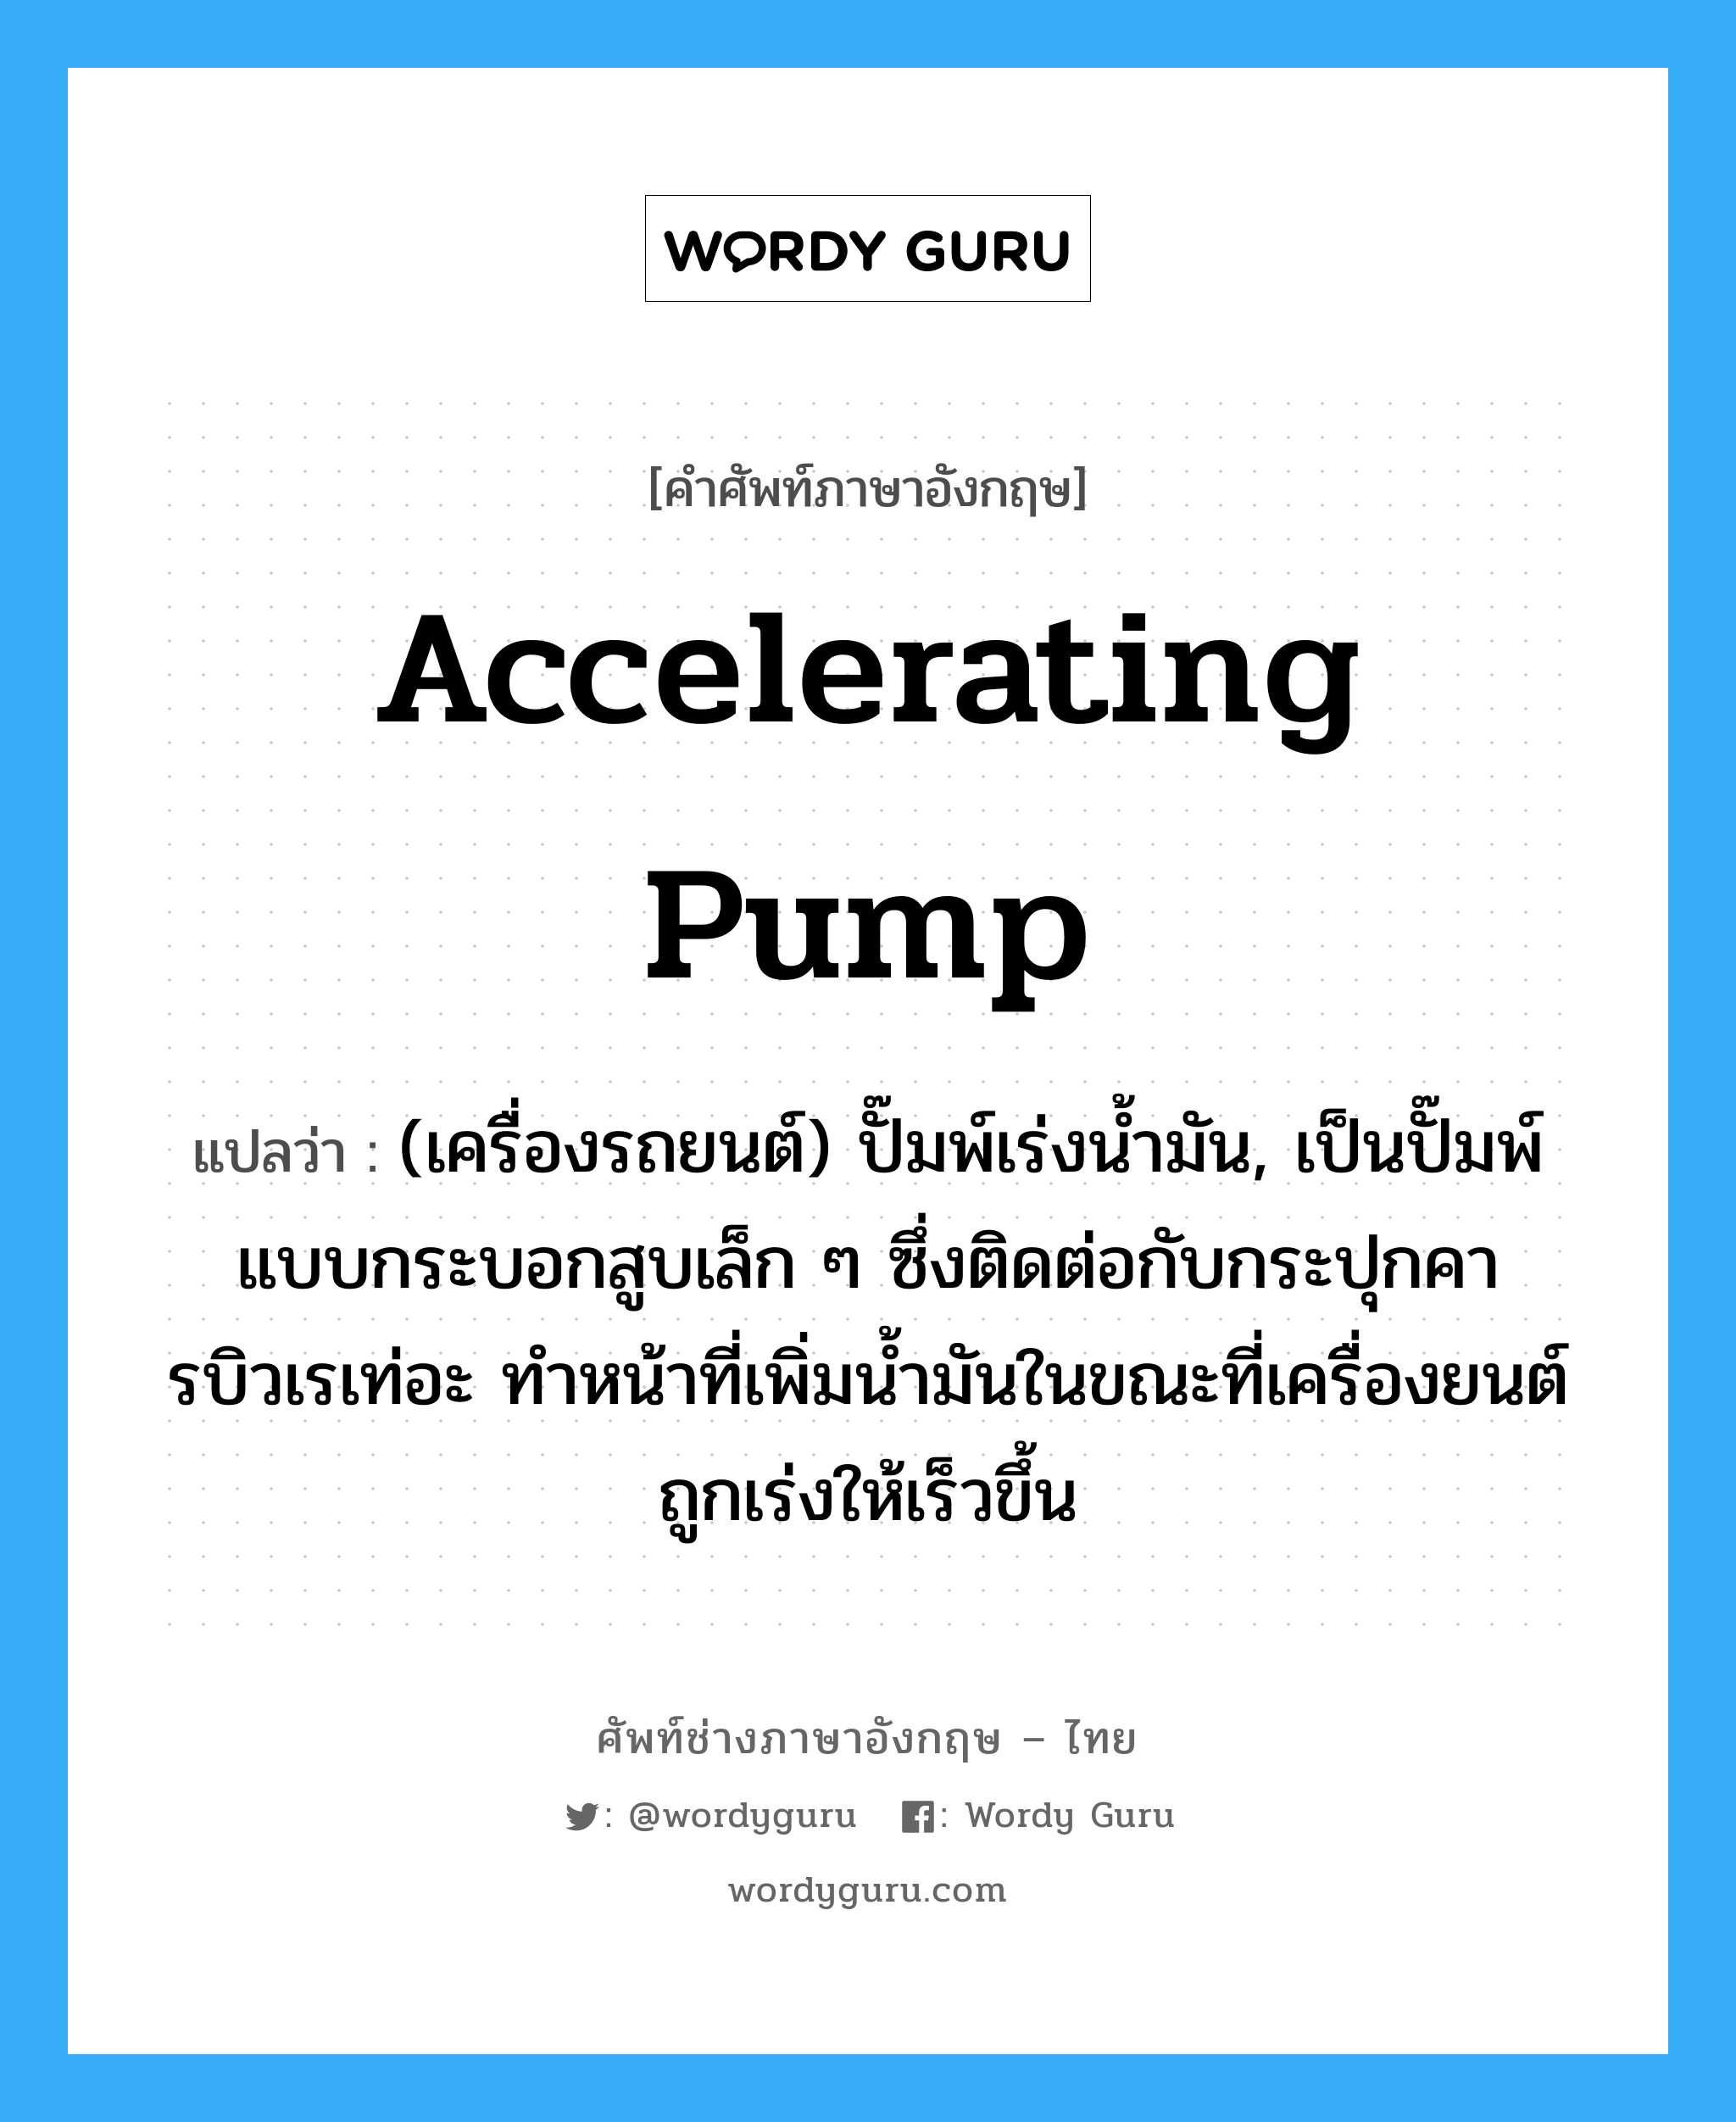 accelerating pump แปลว่า?, คำศัพท์ช่างภาษาอังกฤษ - ไทย accelerating pump คำศัพท์ภาษาอังกฤษ accelerating pump แปลว่า (เครื่องรถยนต์) ปั๊มพ์เร่งน้ำมัน, เป็นปั๊มพ์แบบกระบอกสูบเล็ก ๆ ซึ่งติดต่อกับกระปุกคารบิวเรเท่อะ ทำหน้าที่เพิ่มน้ำมันในขณะที่เครื่องยนต์ถูกเร่งให้เร็วขึ้น